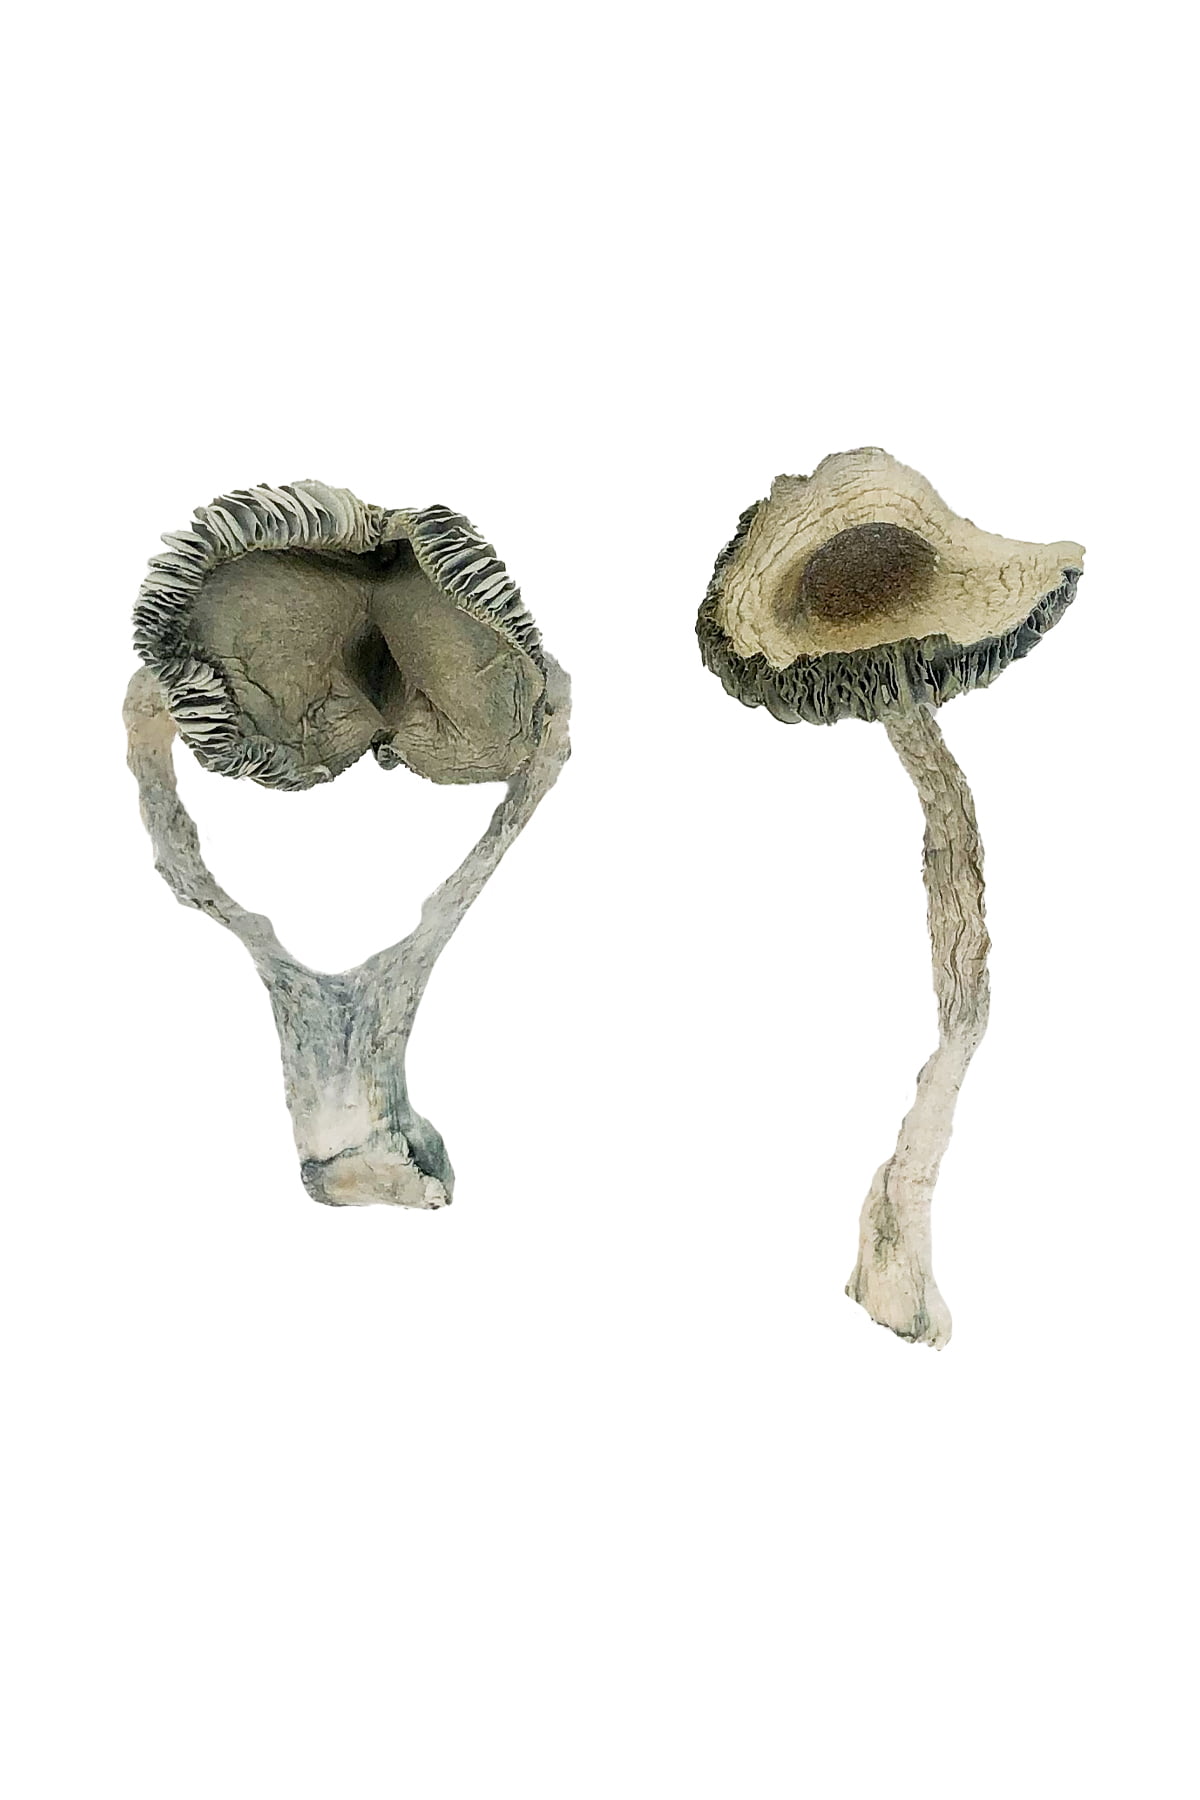 APEX Magic Mushrooms